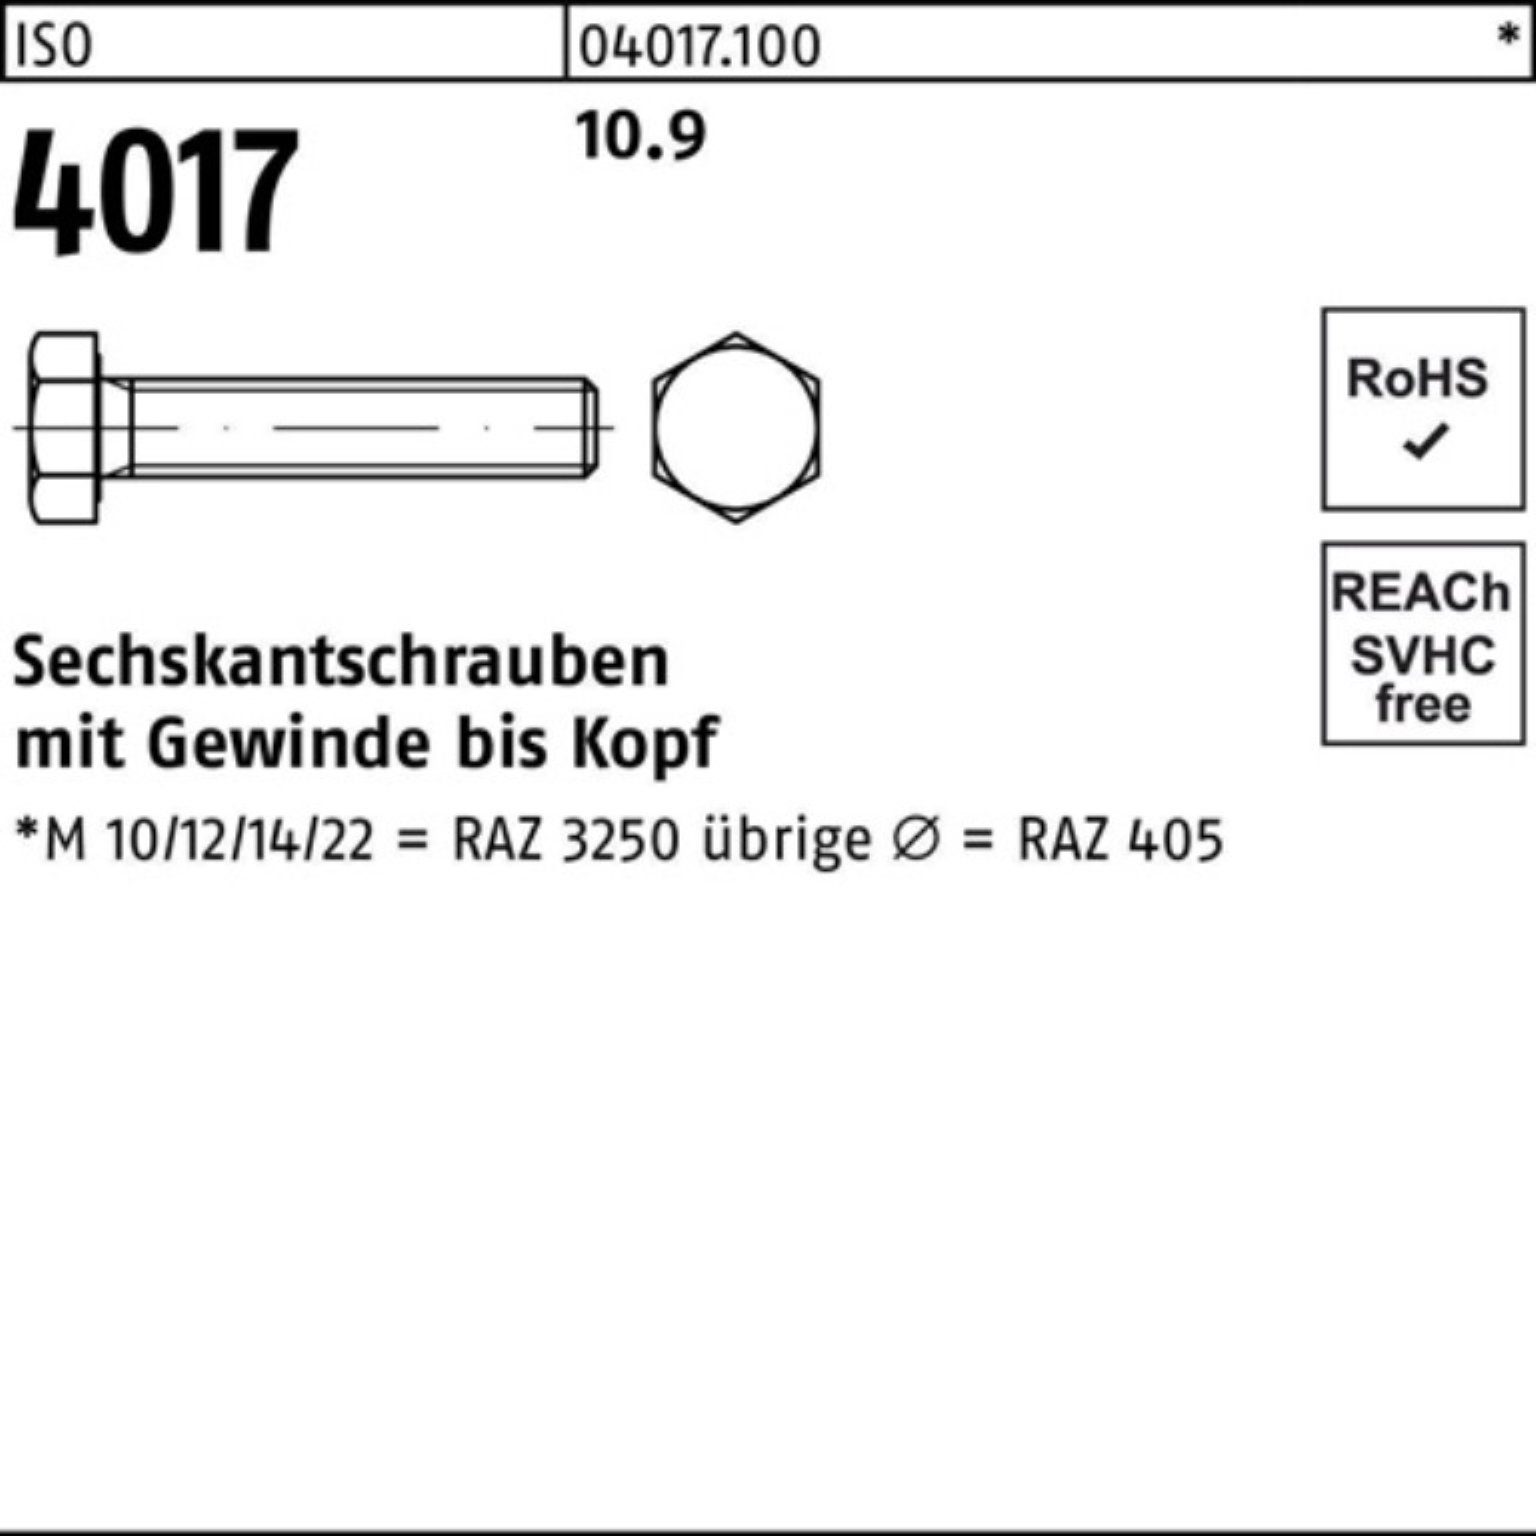 25 Pack ISO 100er M20x VG ISO 4017 120 Sechskantschraube 4 Stück 10.9 Bufab Sechskantschraube